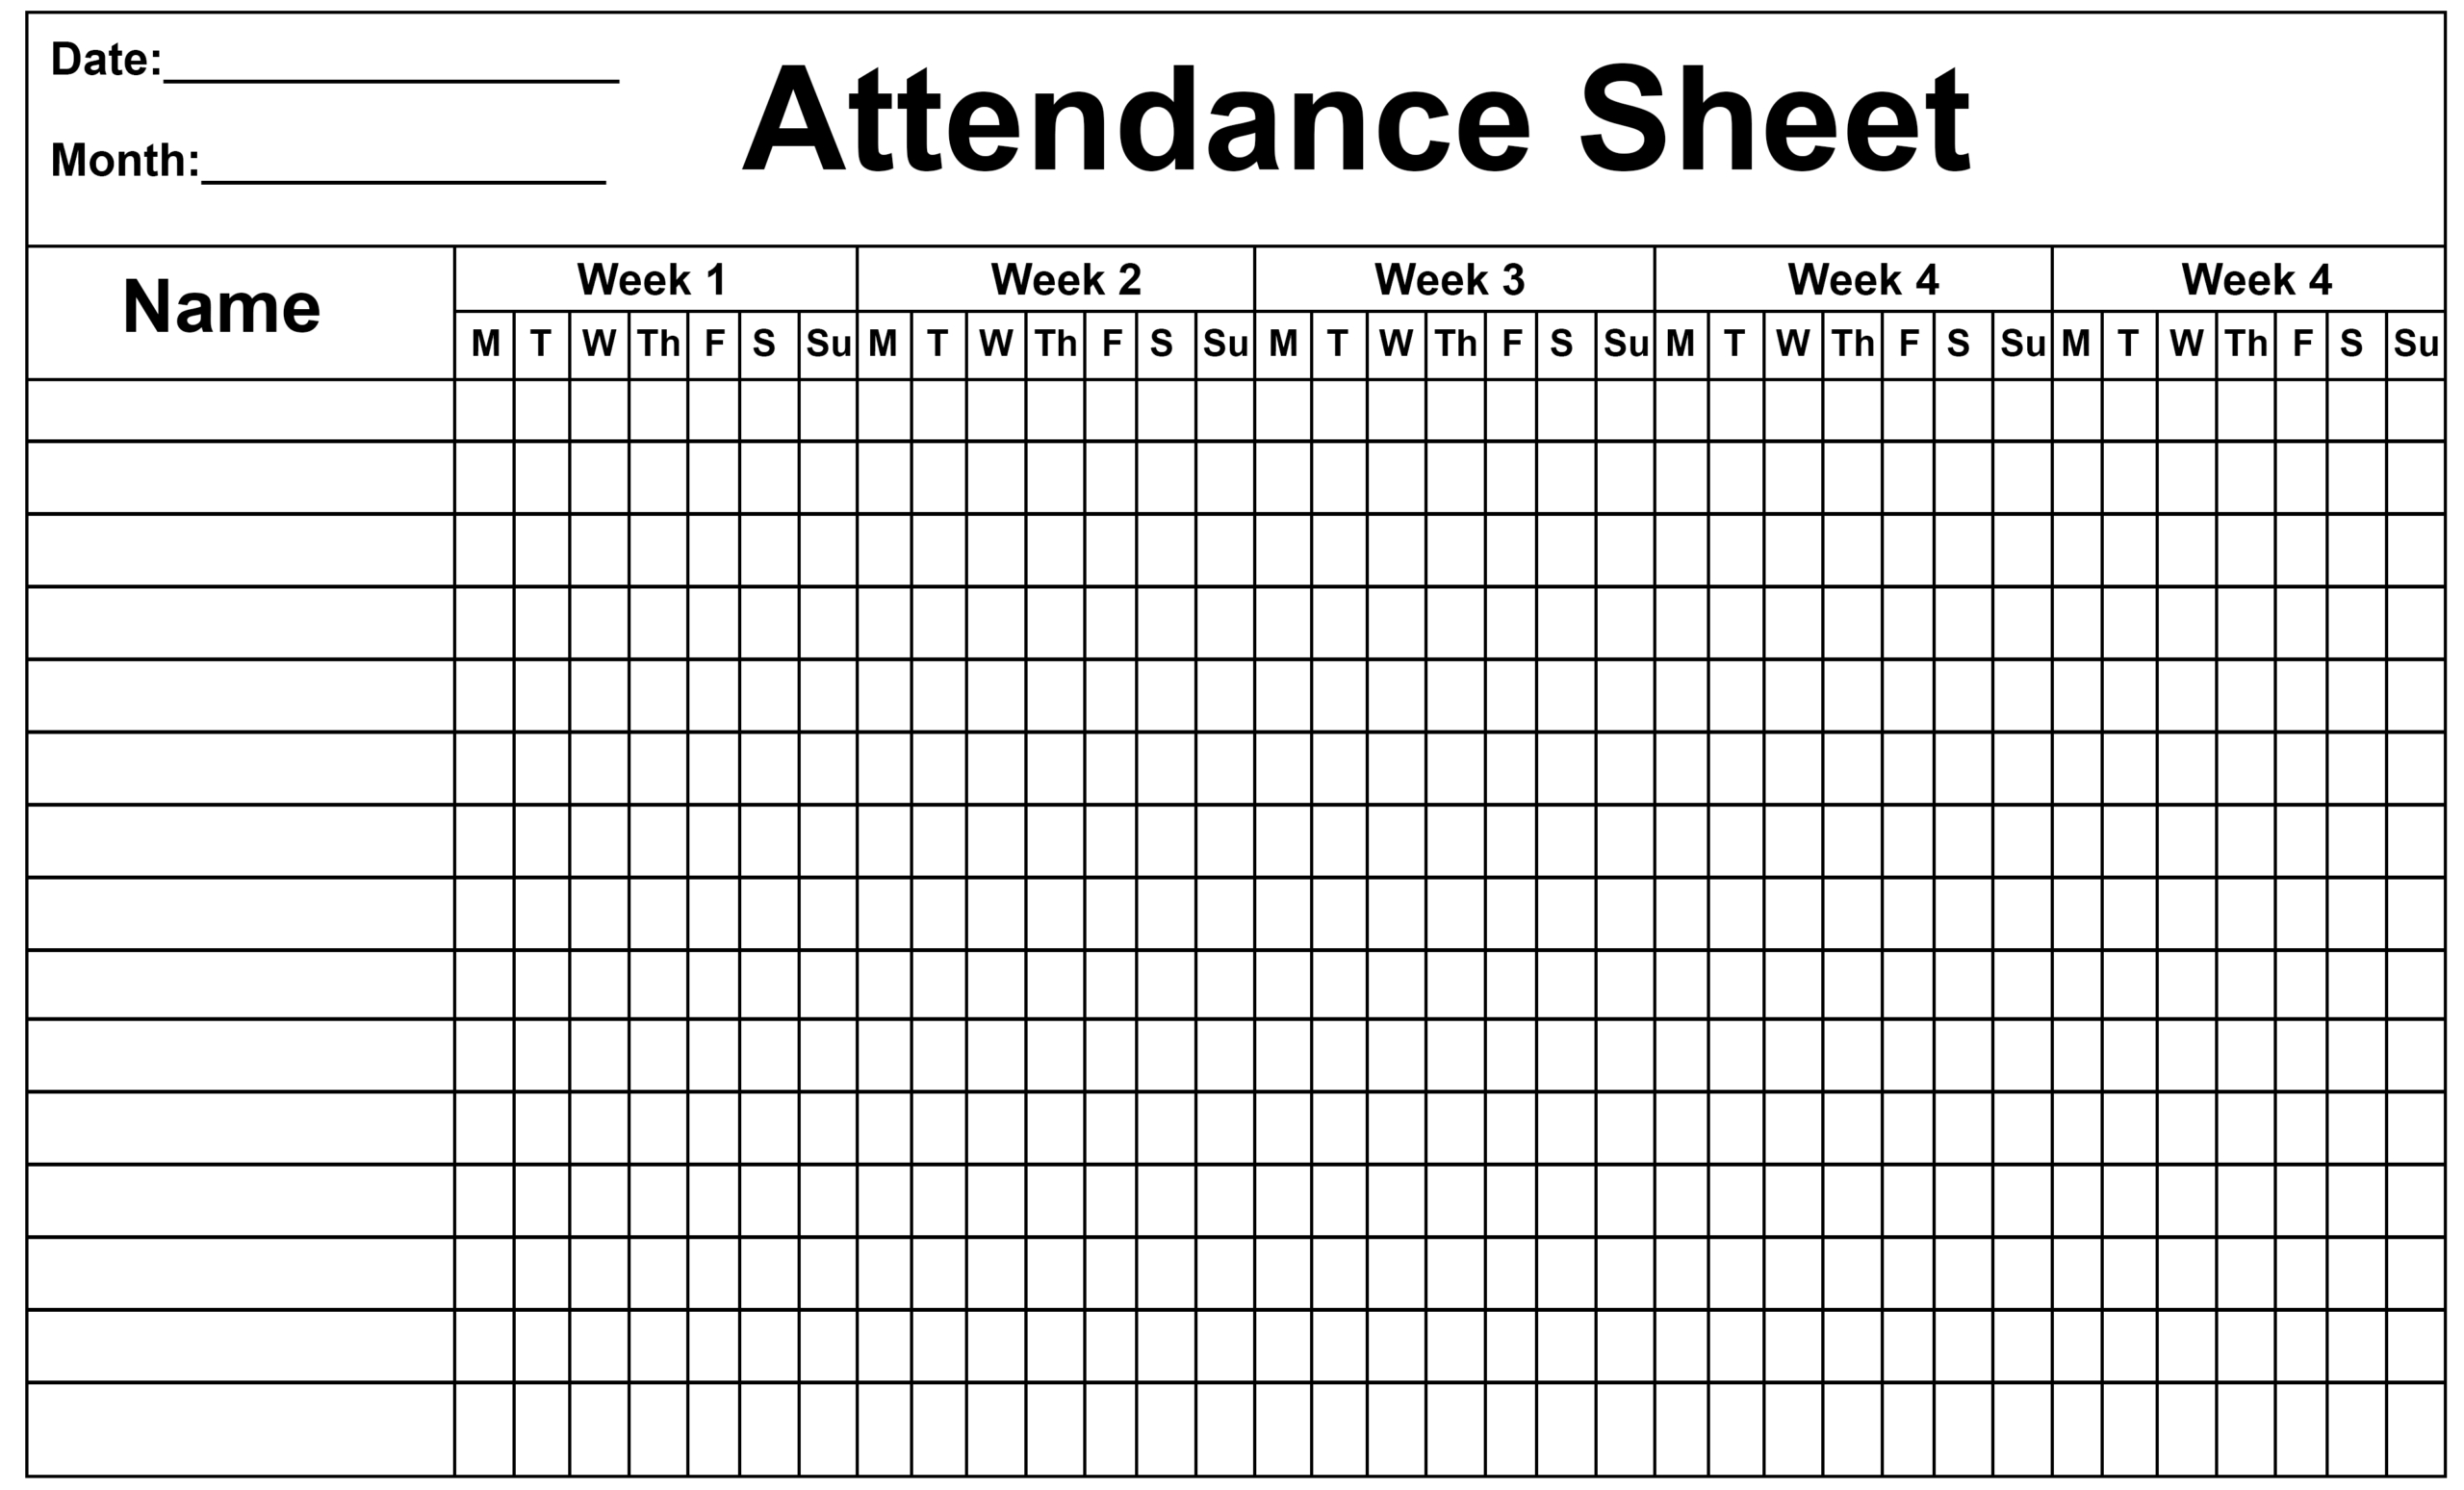 Employee Attendance Sheet Template Calendar | Calendar  Free 2021 Absentee Sheet